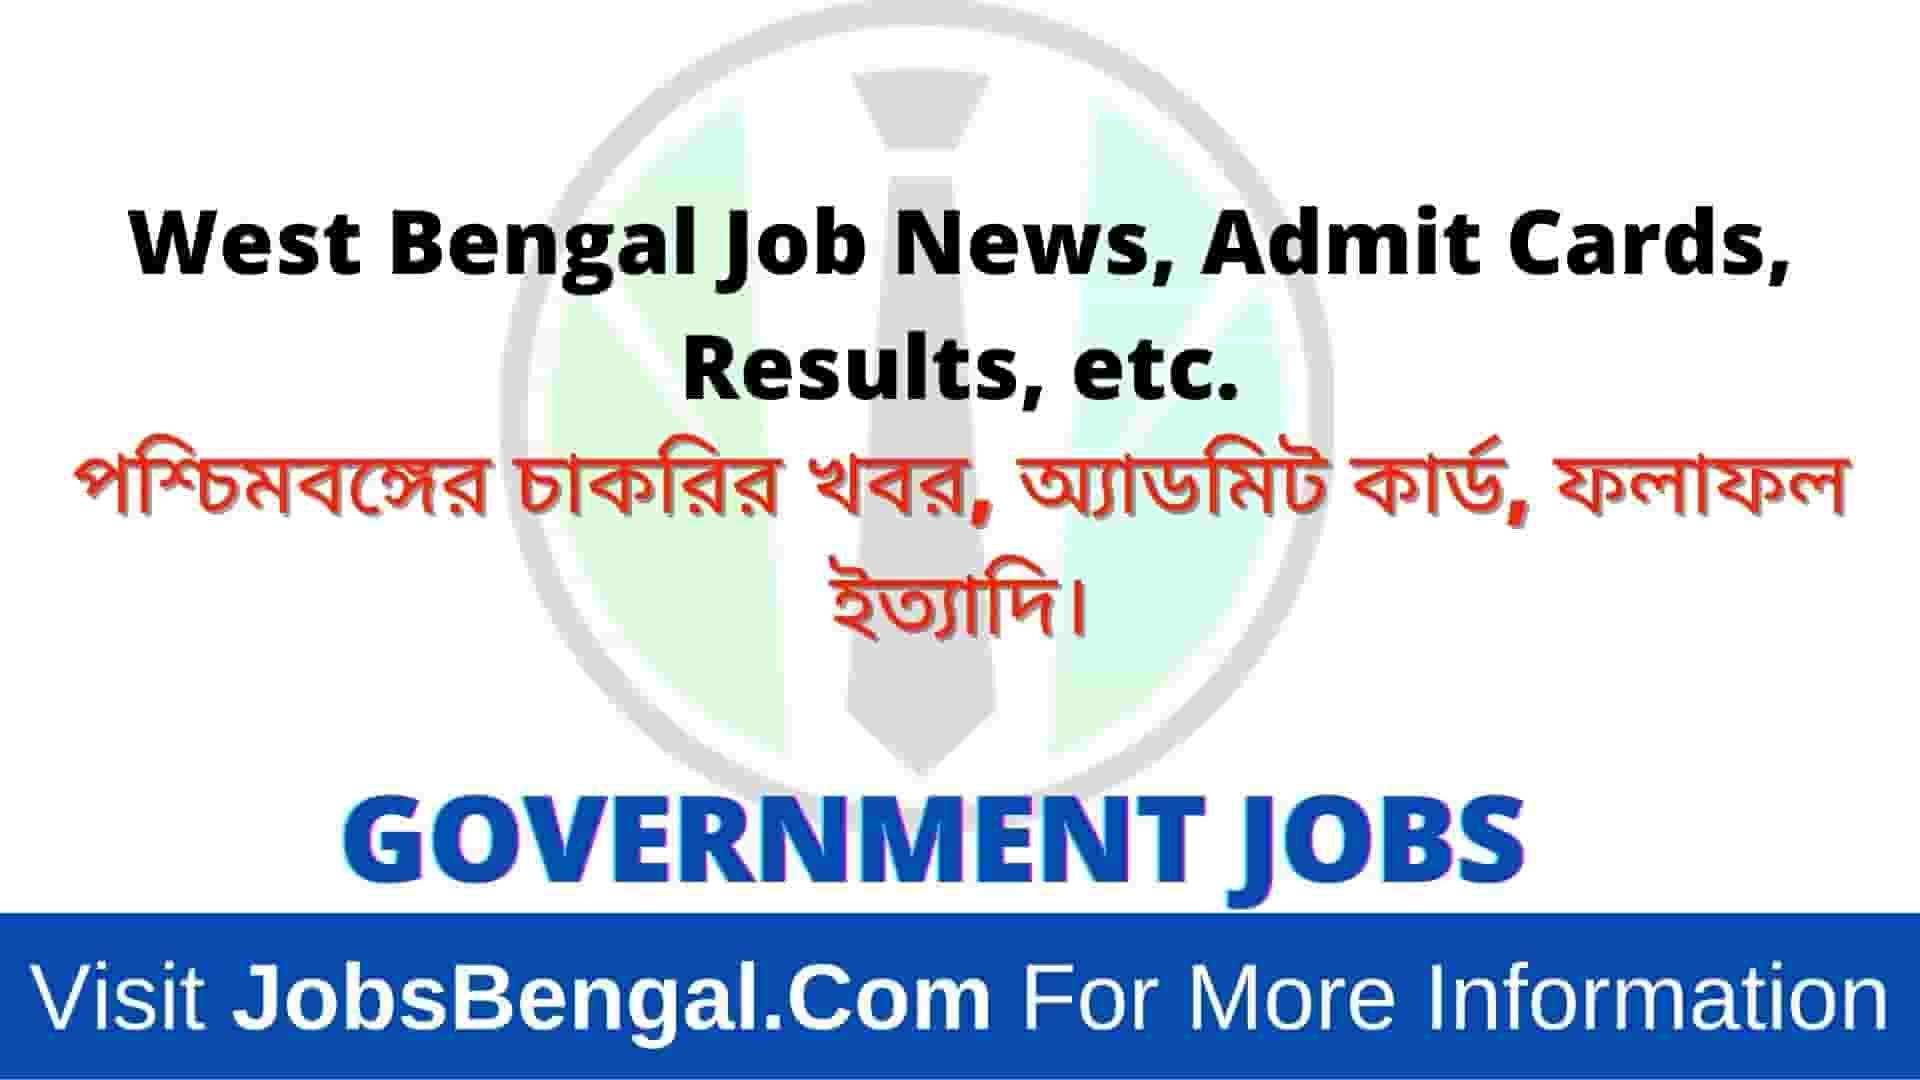 Jobs Bengal